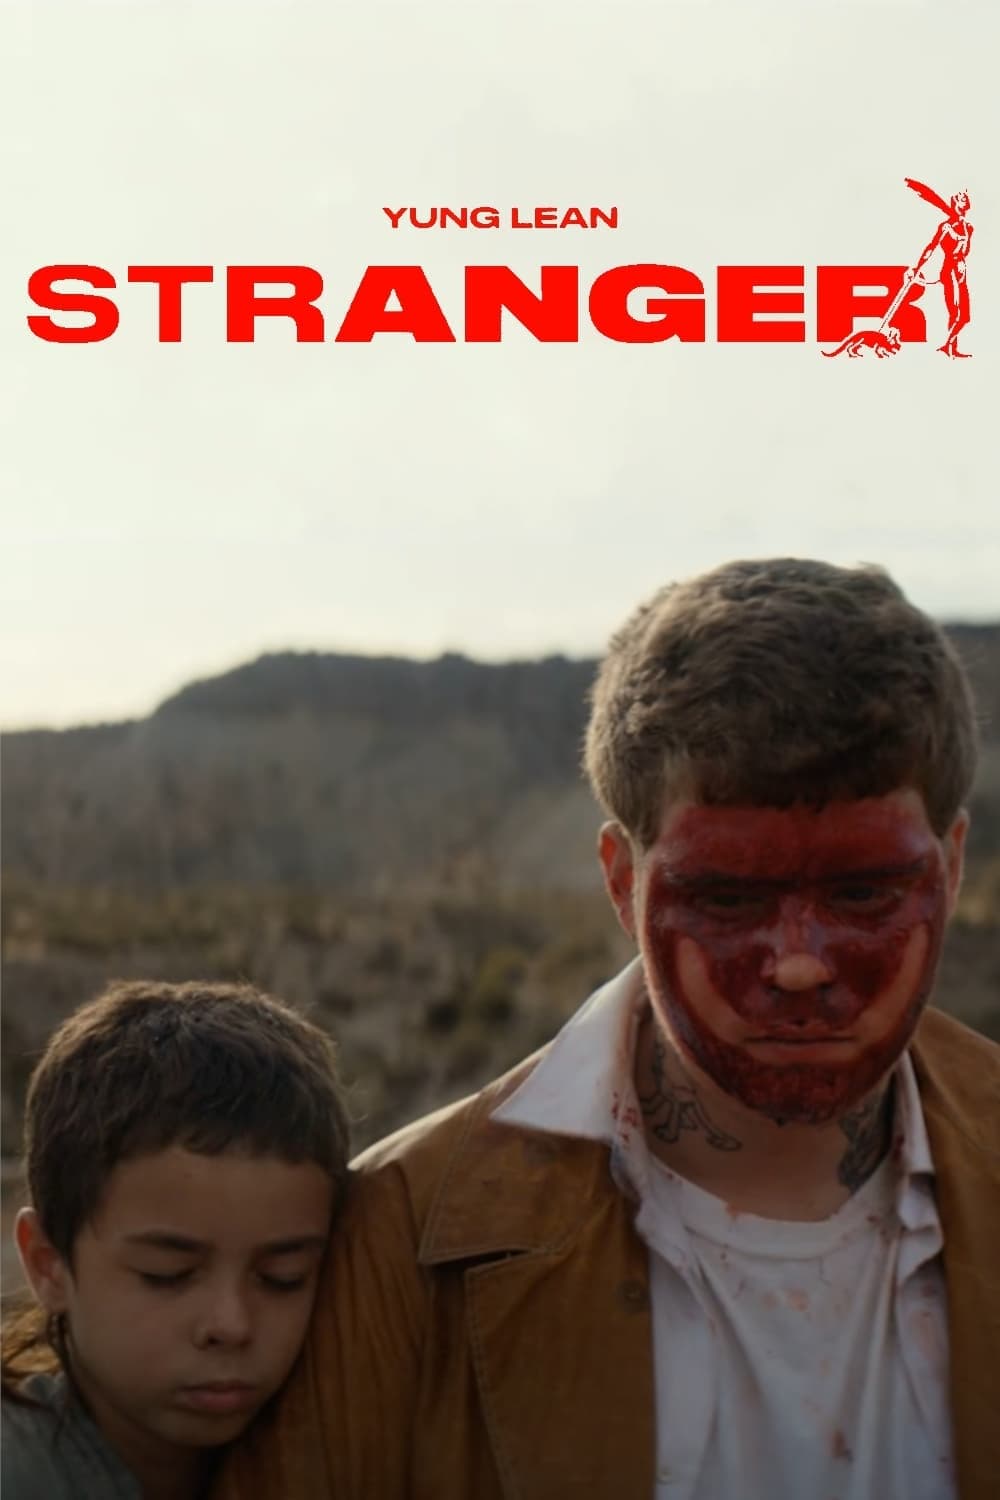 Stranger: the short film